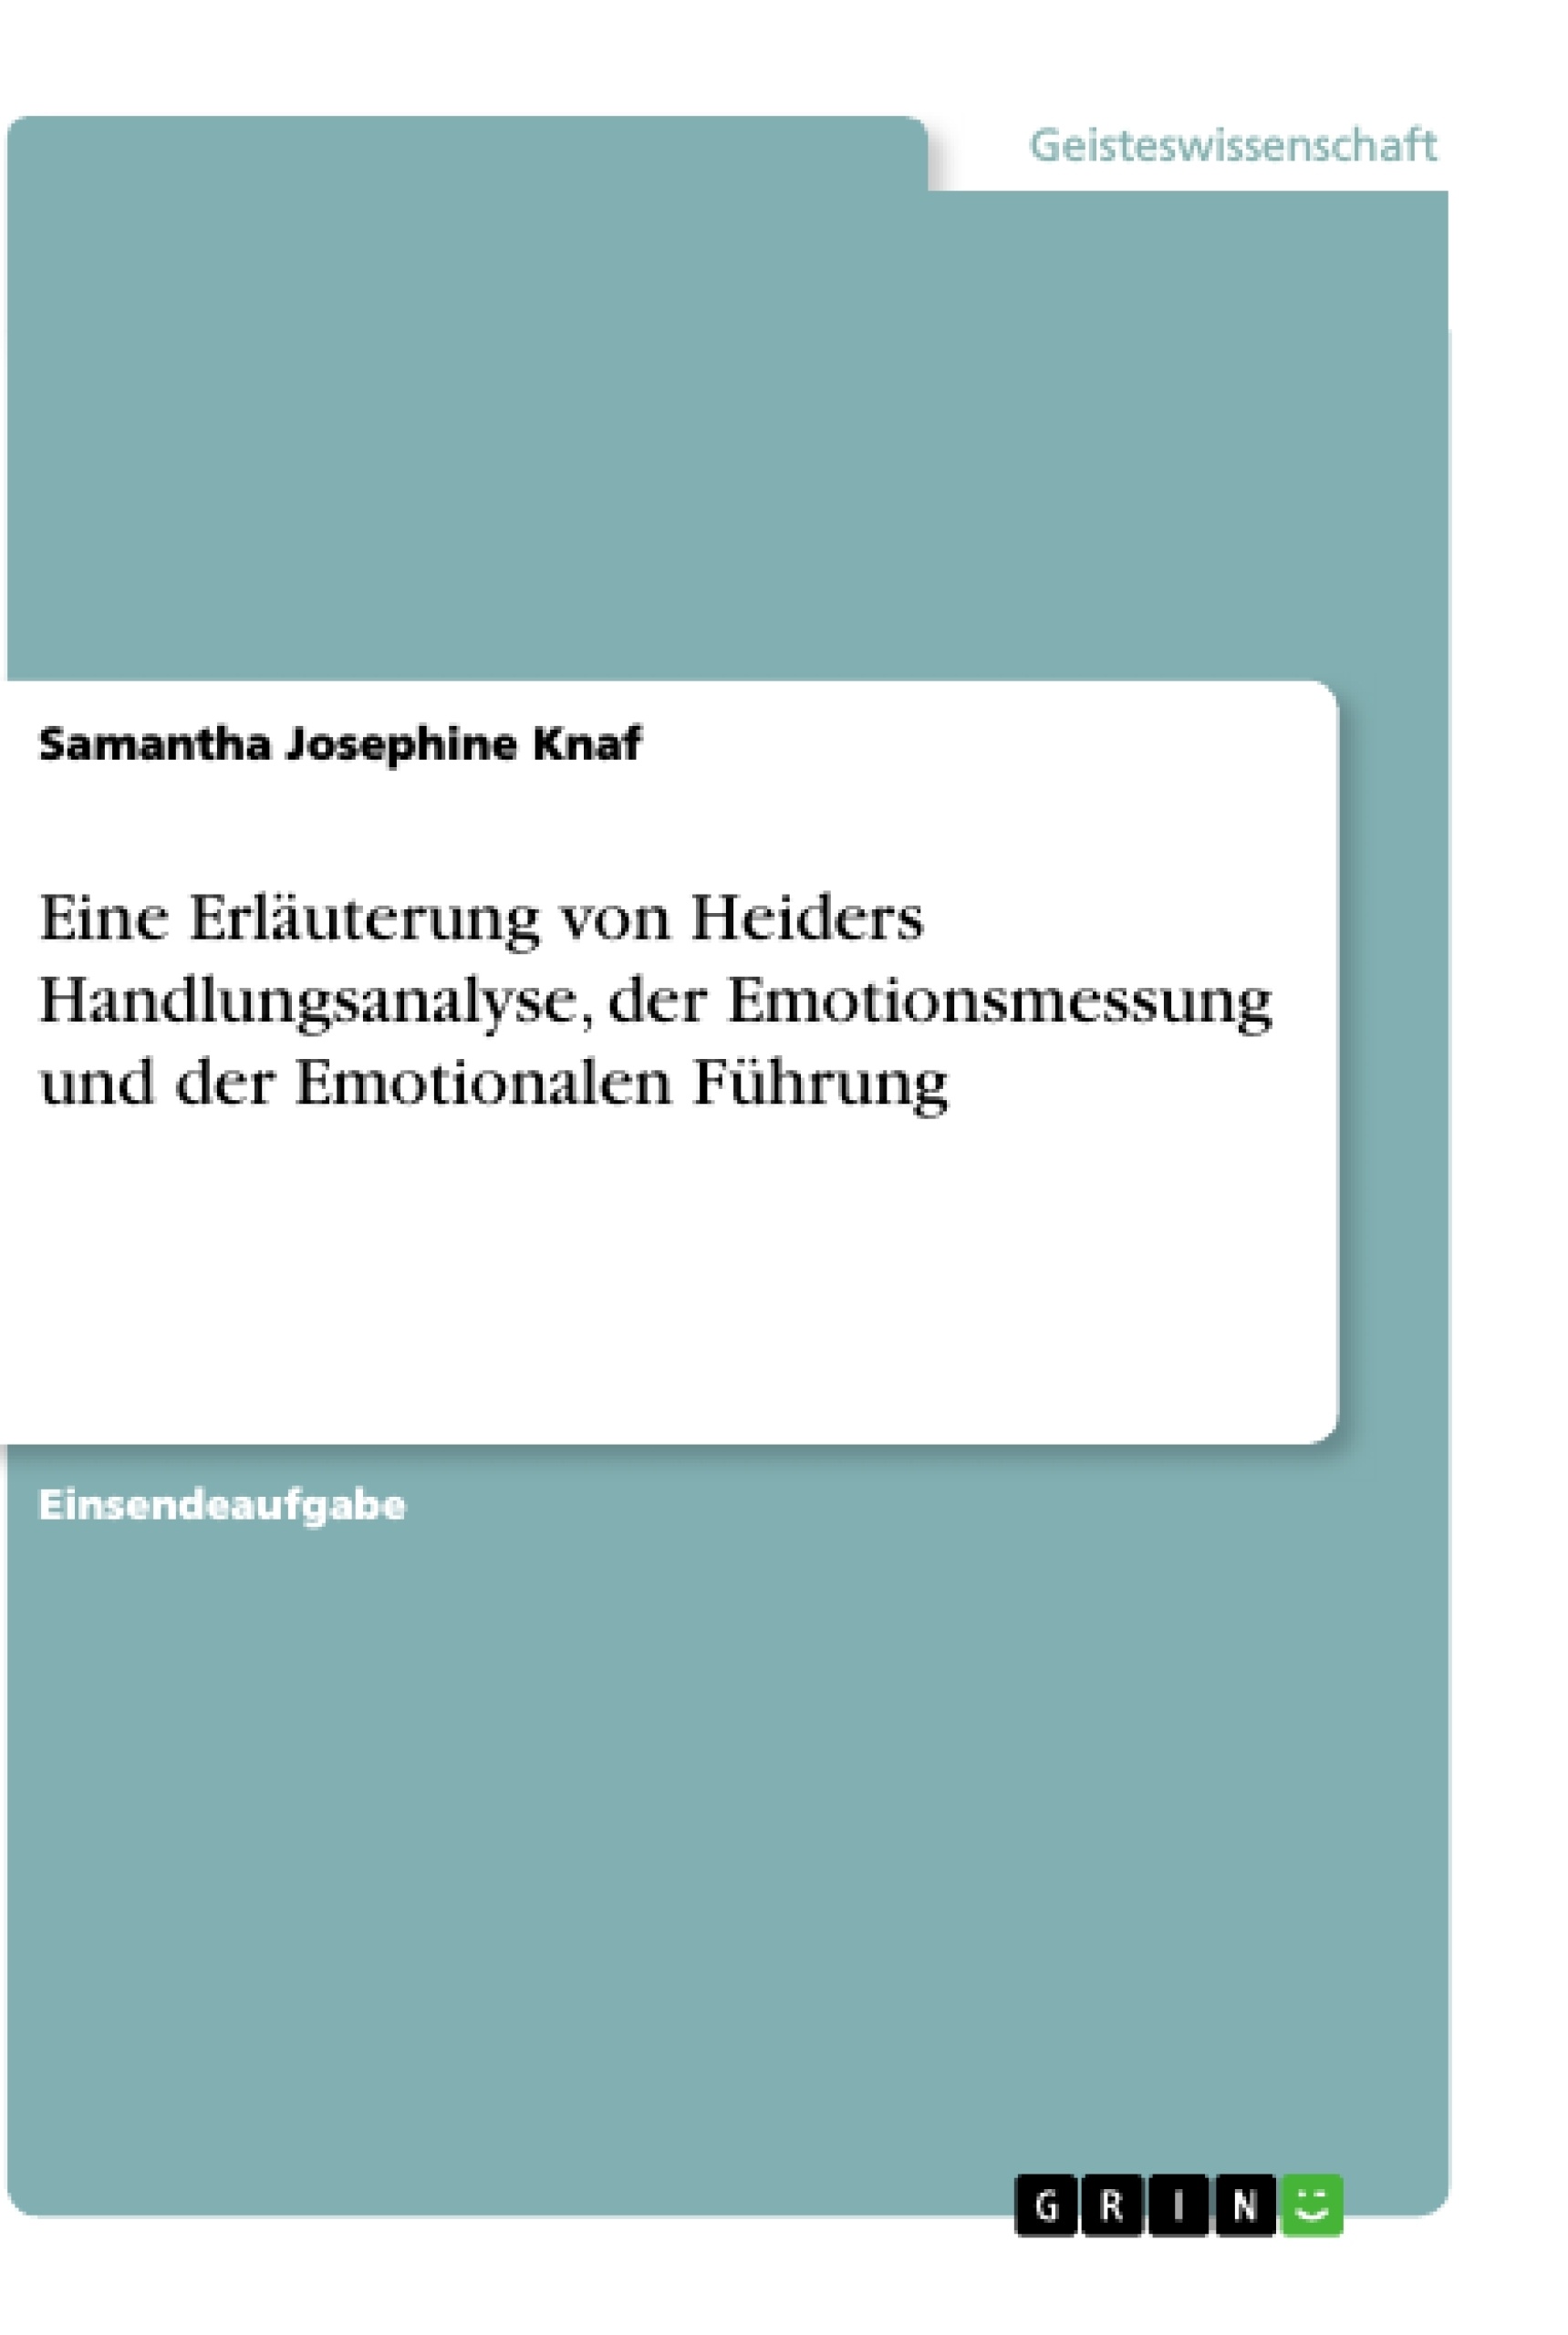 Título: Eine Erläuterung von Heiders Handlungsanalyse, der Emotionsmessung und der Emotionalen Führung